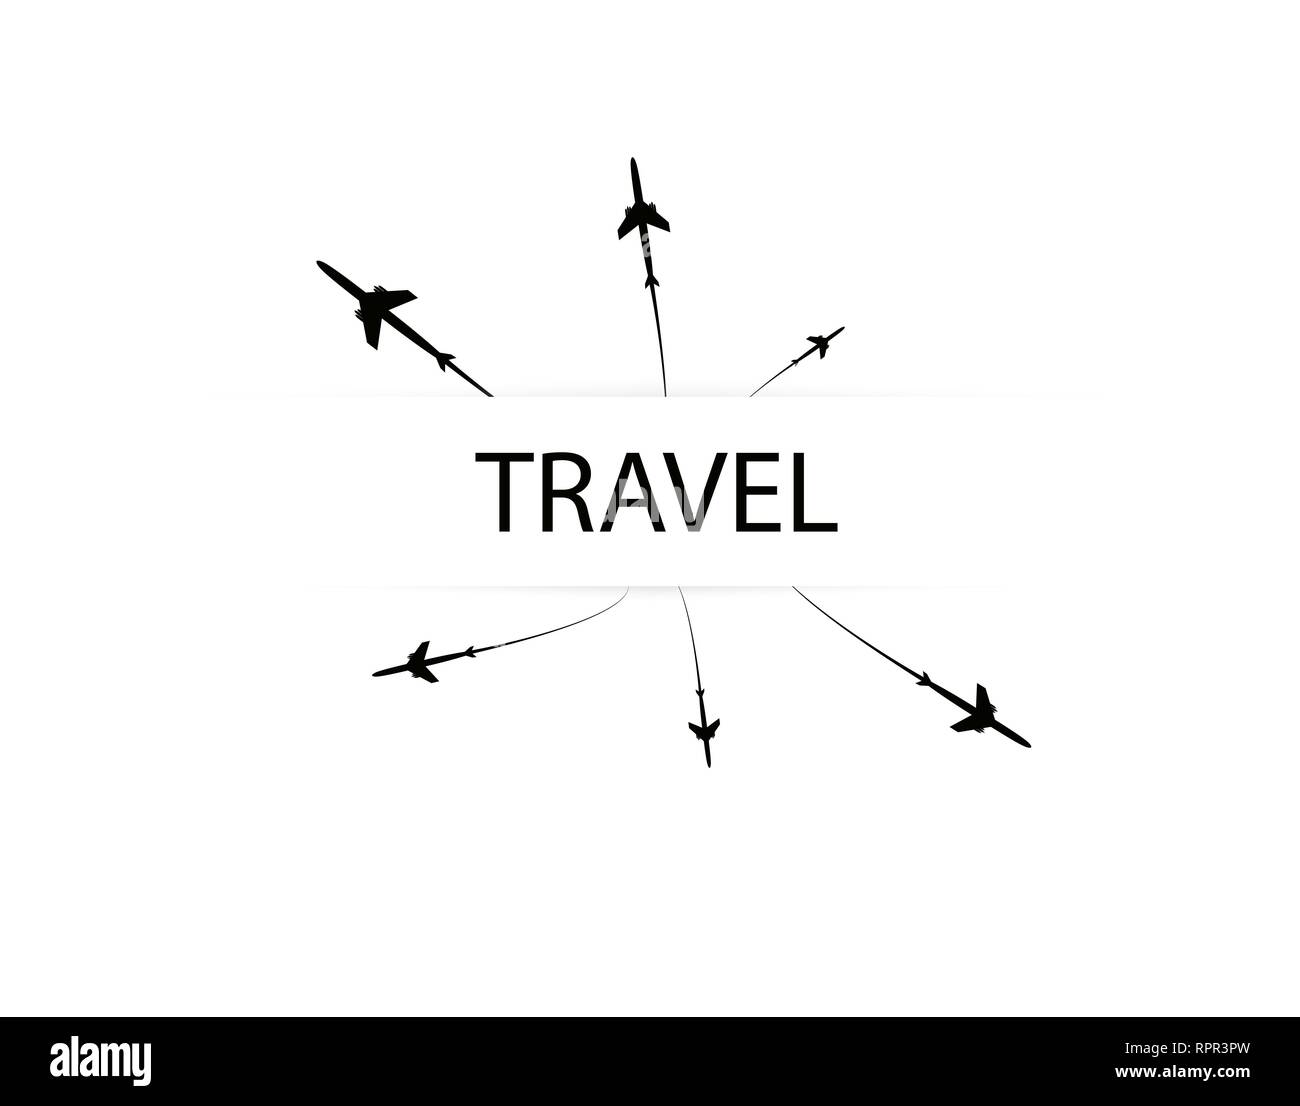 Les avions vole sur la ligne. Le tourisme et les voyages. Le waypoint est conçu pour un voyage touristique. et son tracé sur un fond blanc. Vector Illustration de Vecteur